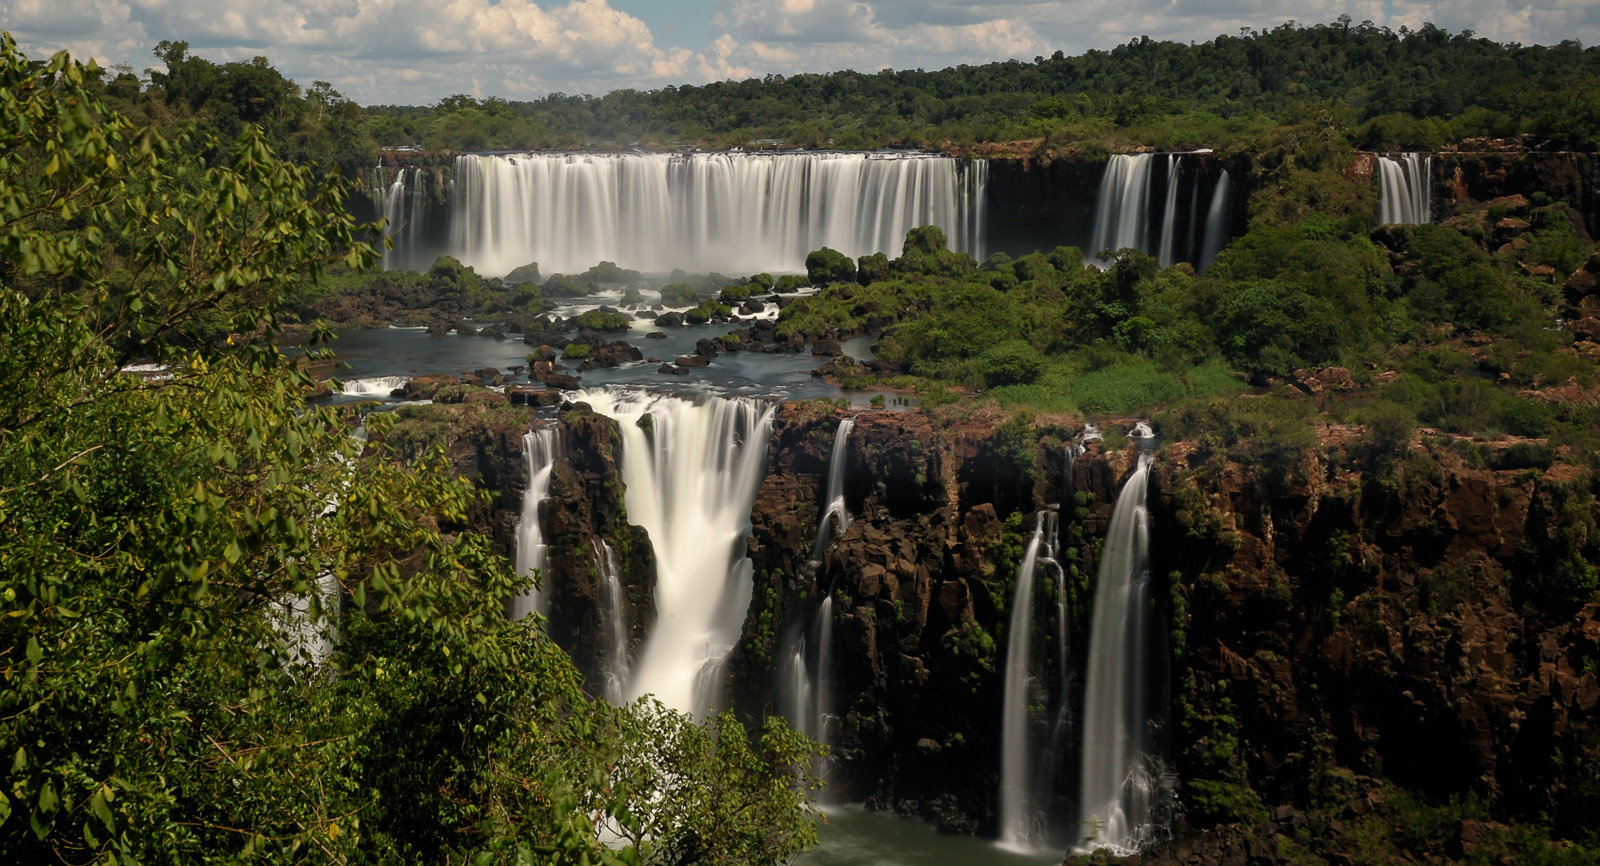 Cataratas del Iguazu [40 mm, 15.0 sec at f / 22, ISO 200]